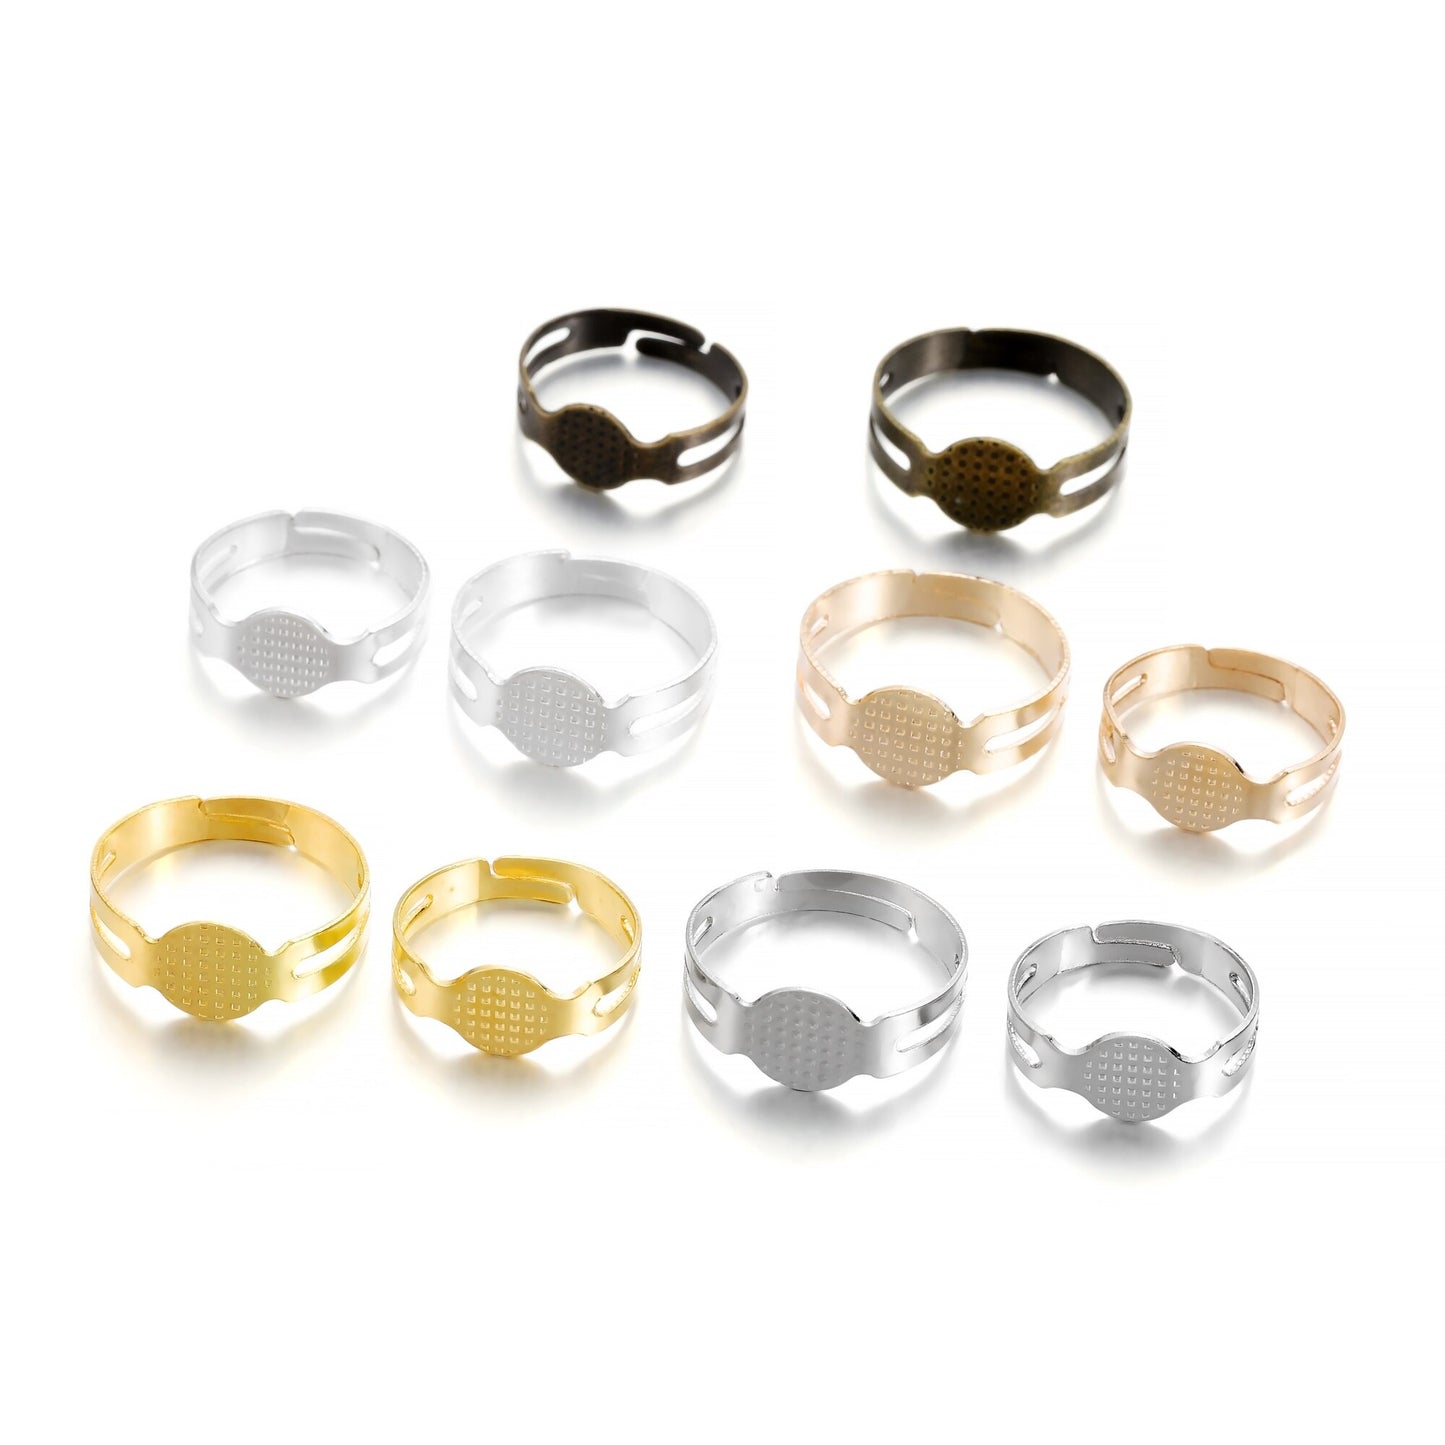 40 anneaux réglables plaqués or de 7, 8 mm.